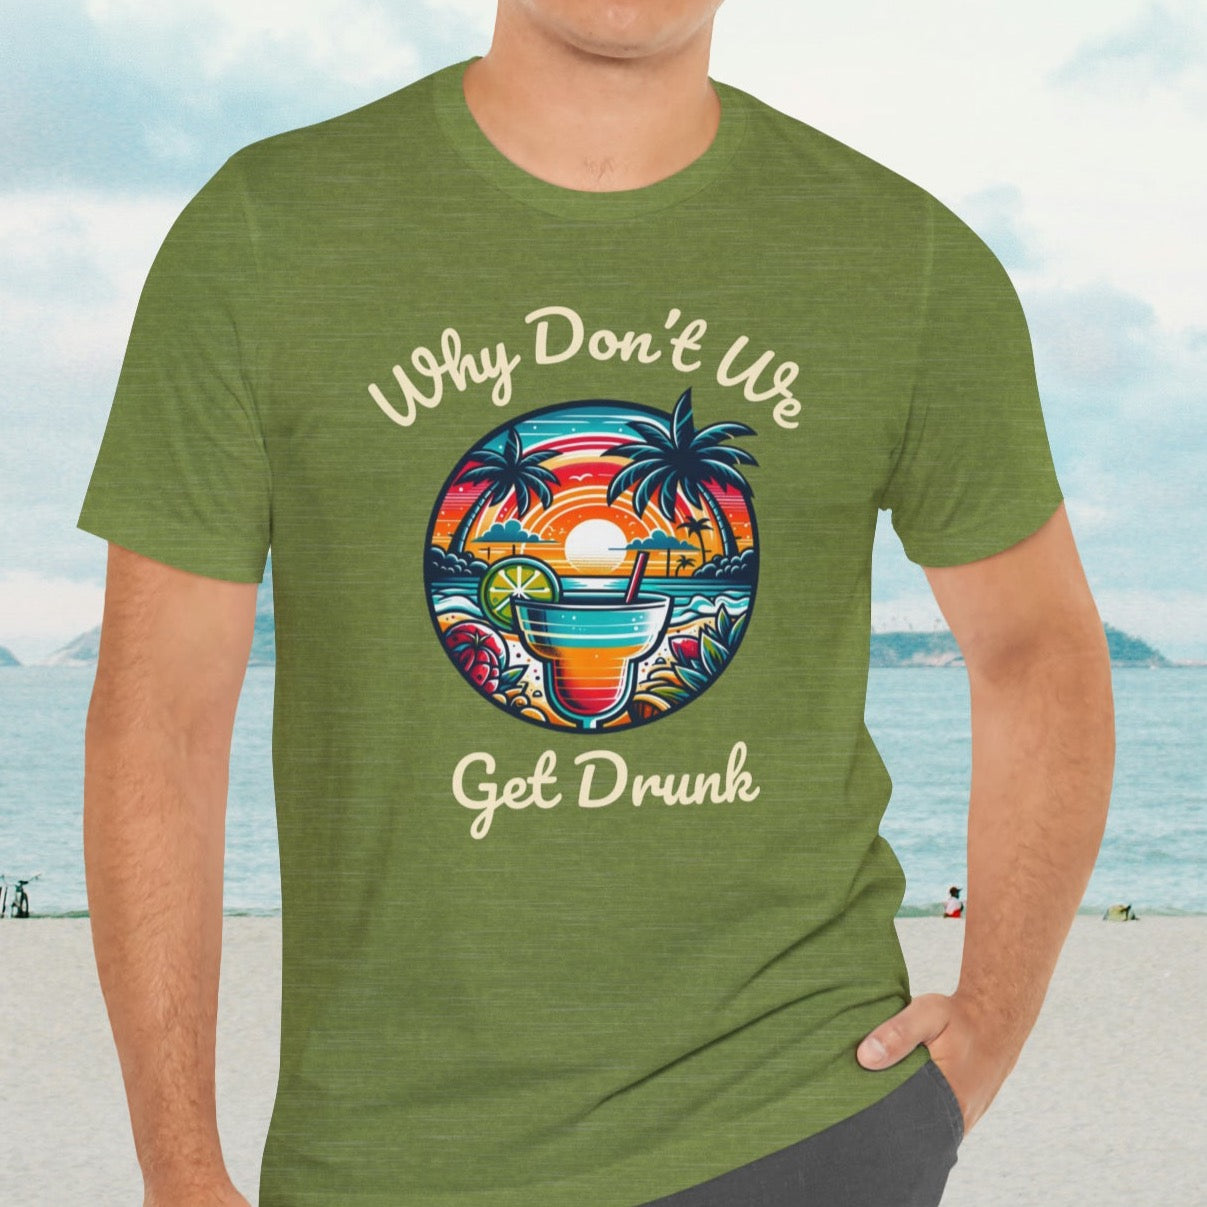 "Get Drunk" Men's Tropical t- shirt